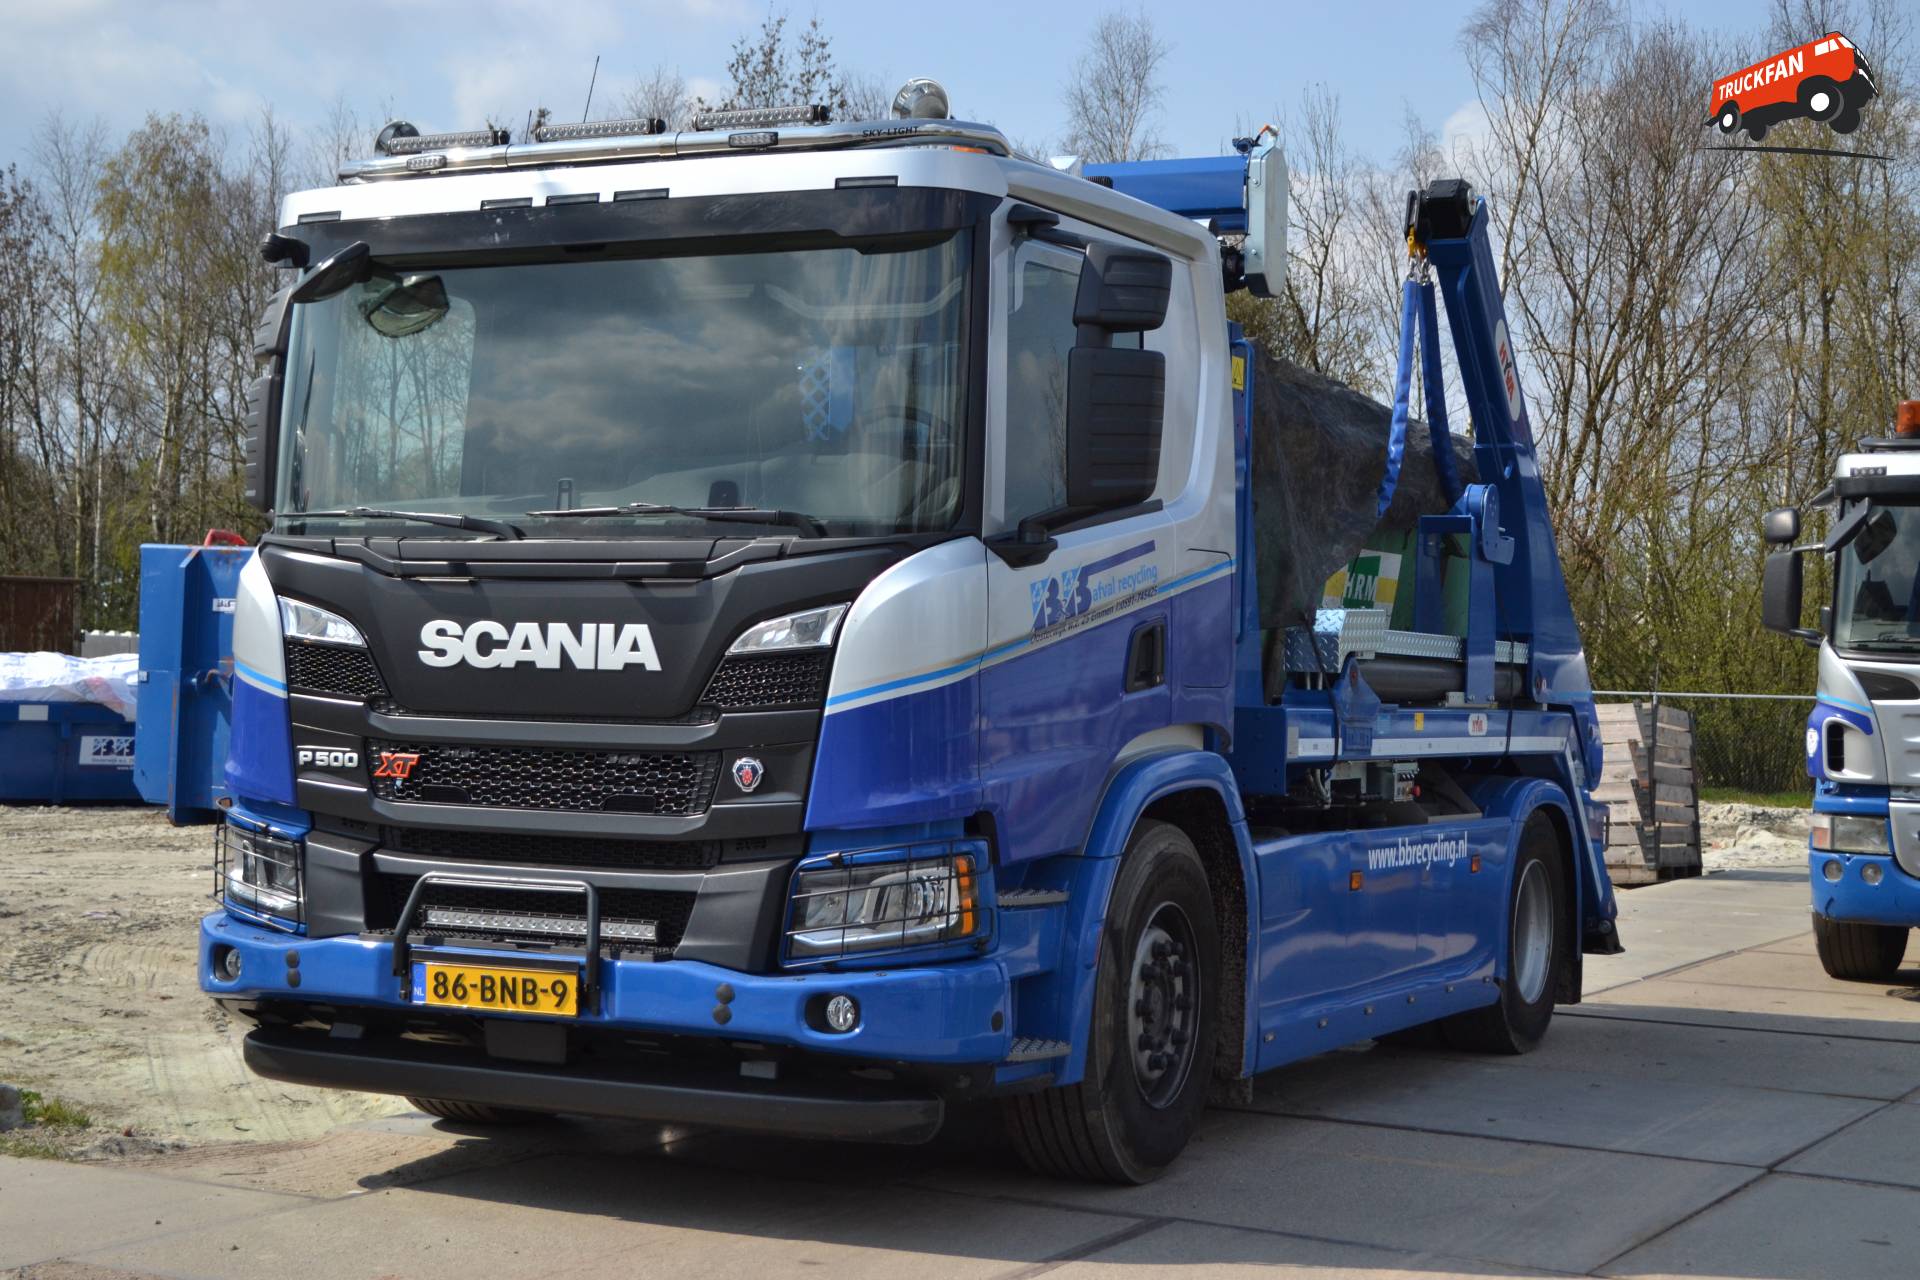 Scania P500 XT